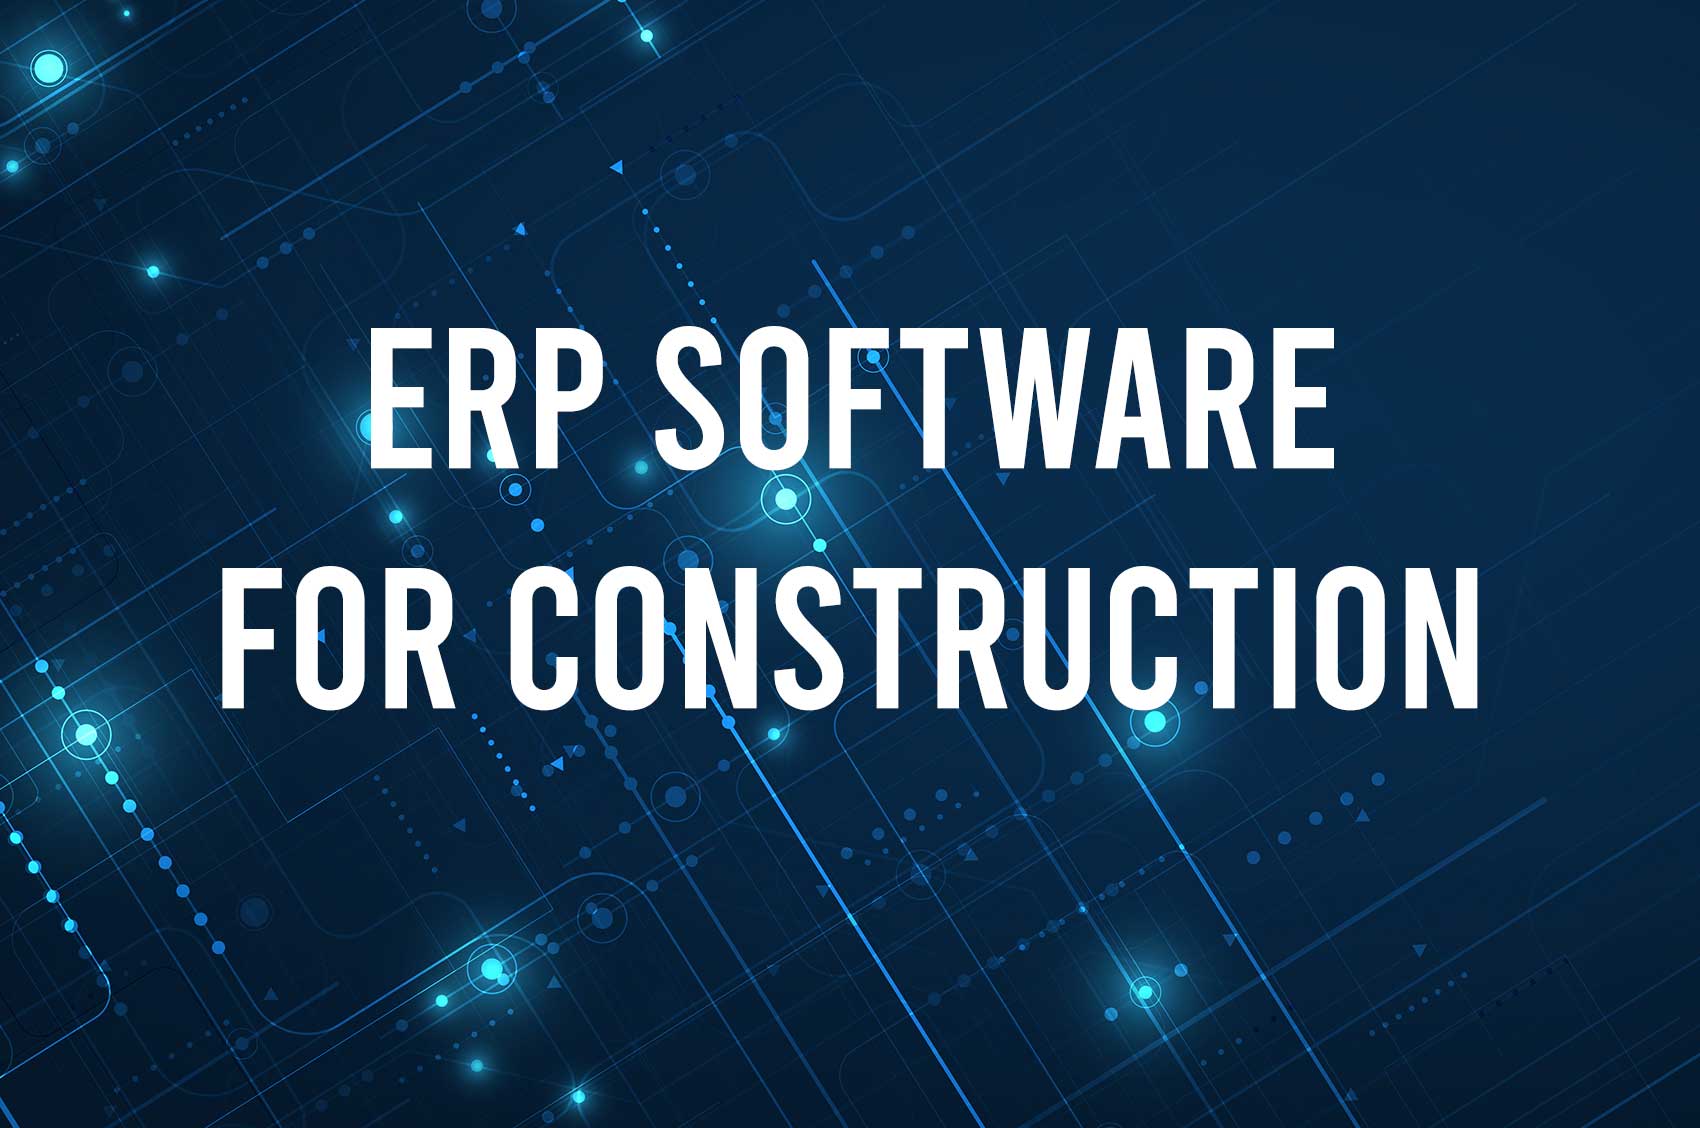 เปลี่ยนผ่านสู่ยุคดิจิทัลโดยใช้ระบบ ERP งานก่อสร้างอย่างเต็มตัว